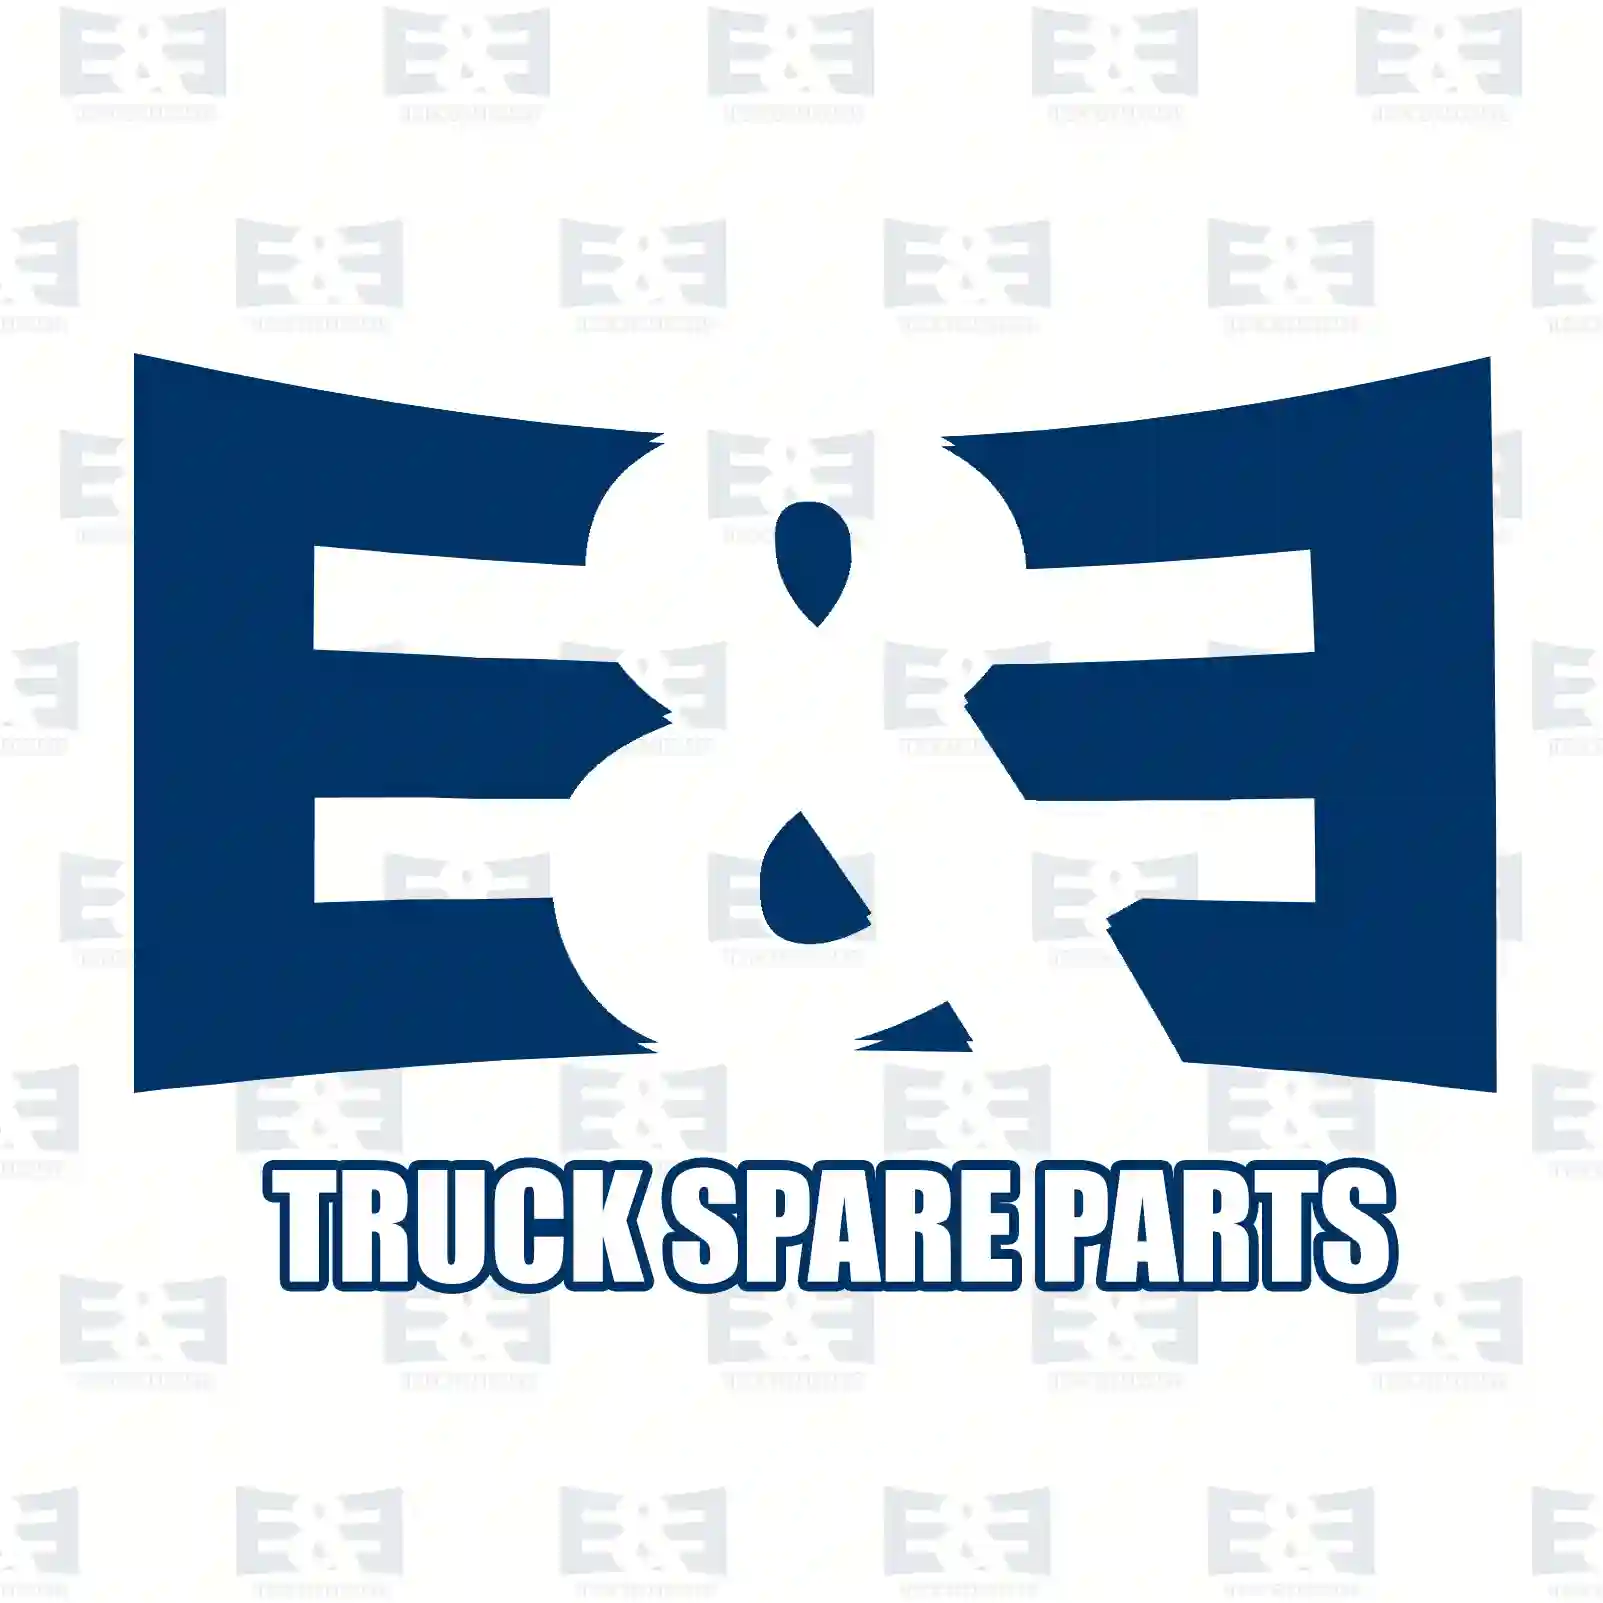 Fan clutch, 2E2203139, 9062001022, 9062001122, 9062001922 ||  2E2203139 E&E Truck Spare Parts | Truck Spare Parts, Auotomotive Spare Parts Fan clutch, 2E2203139, 9062001022, 9062001122, 9062001922 ||  2E2203139 E&E Truck Spare Parts | Truck Spare Parts, Auotomotive Spare Parts